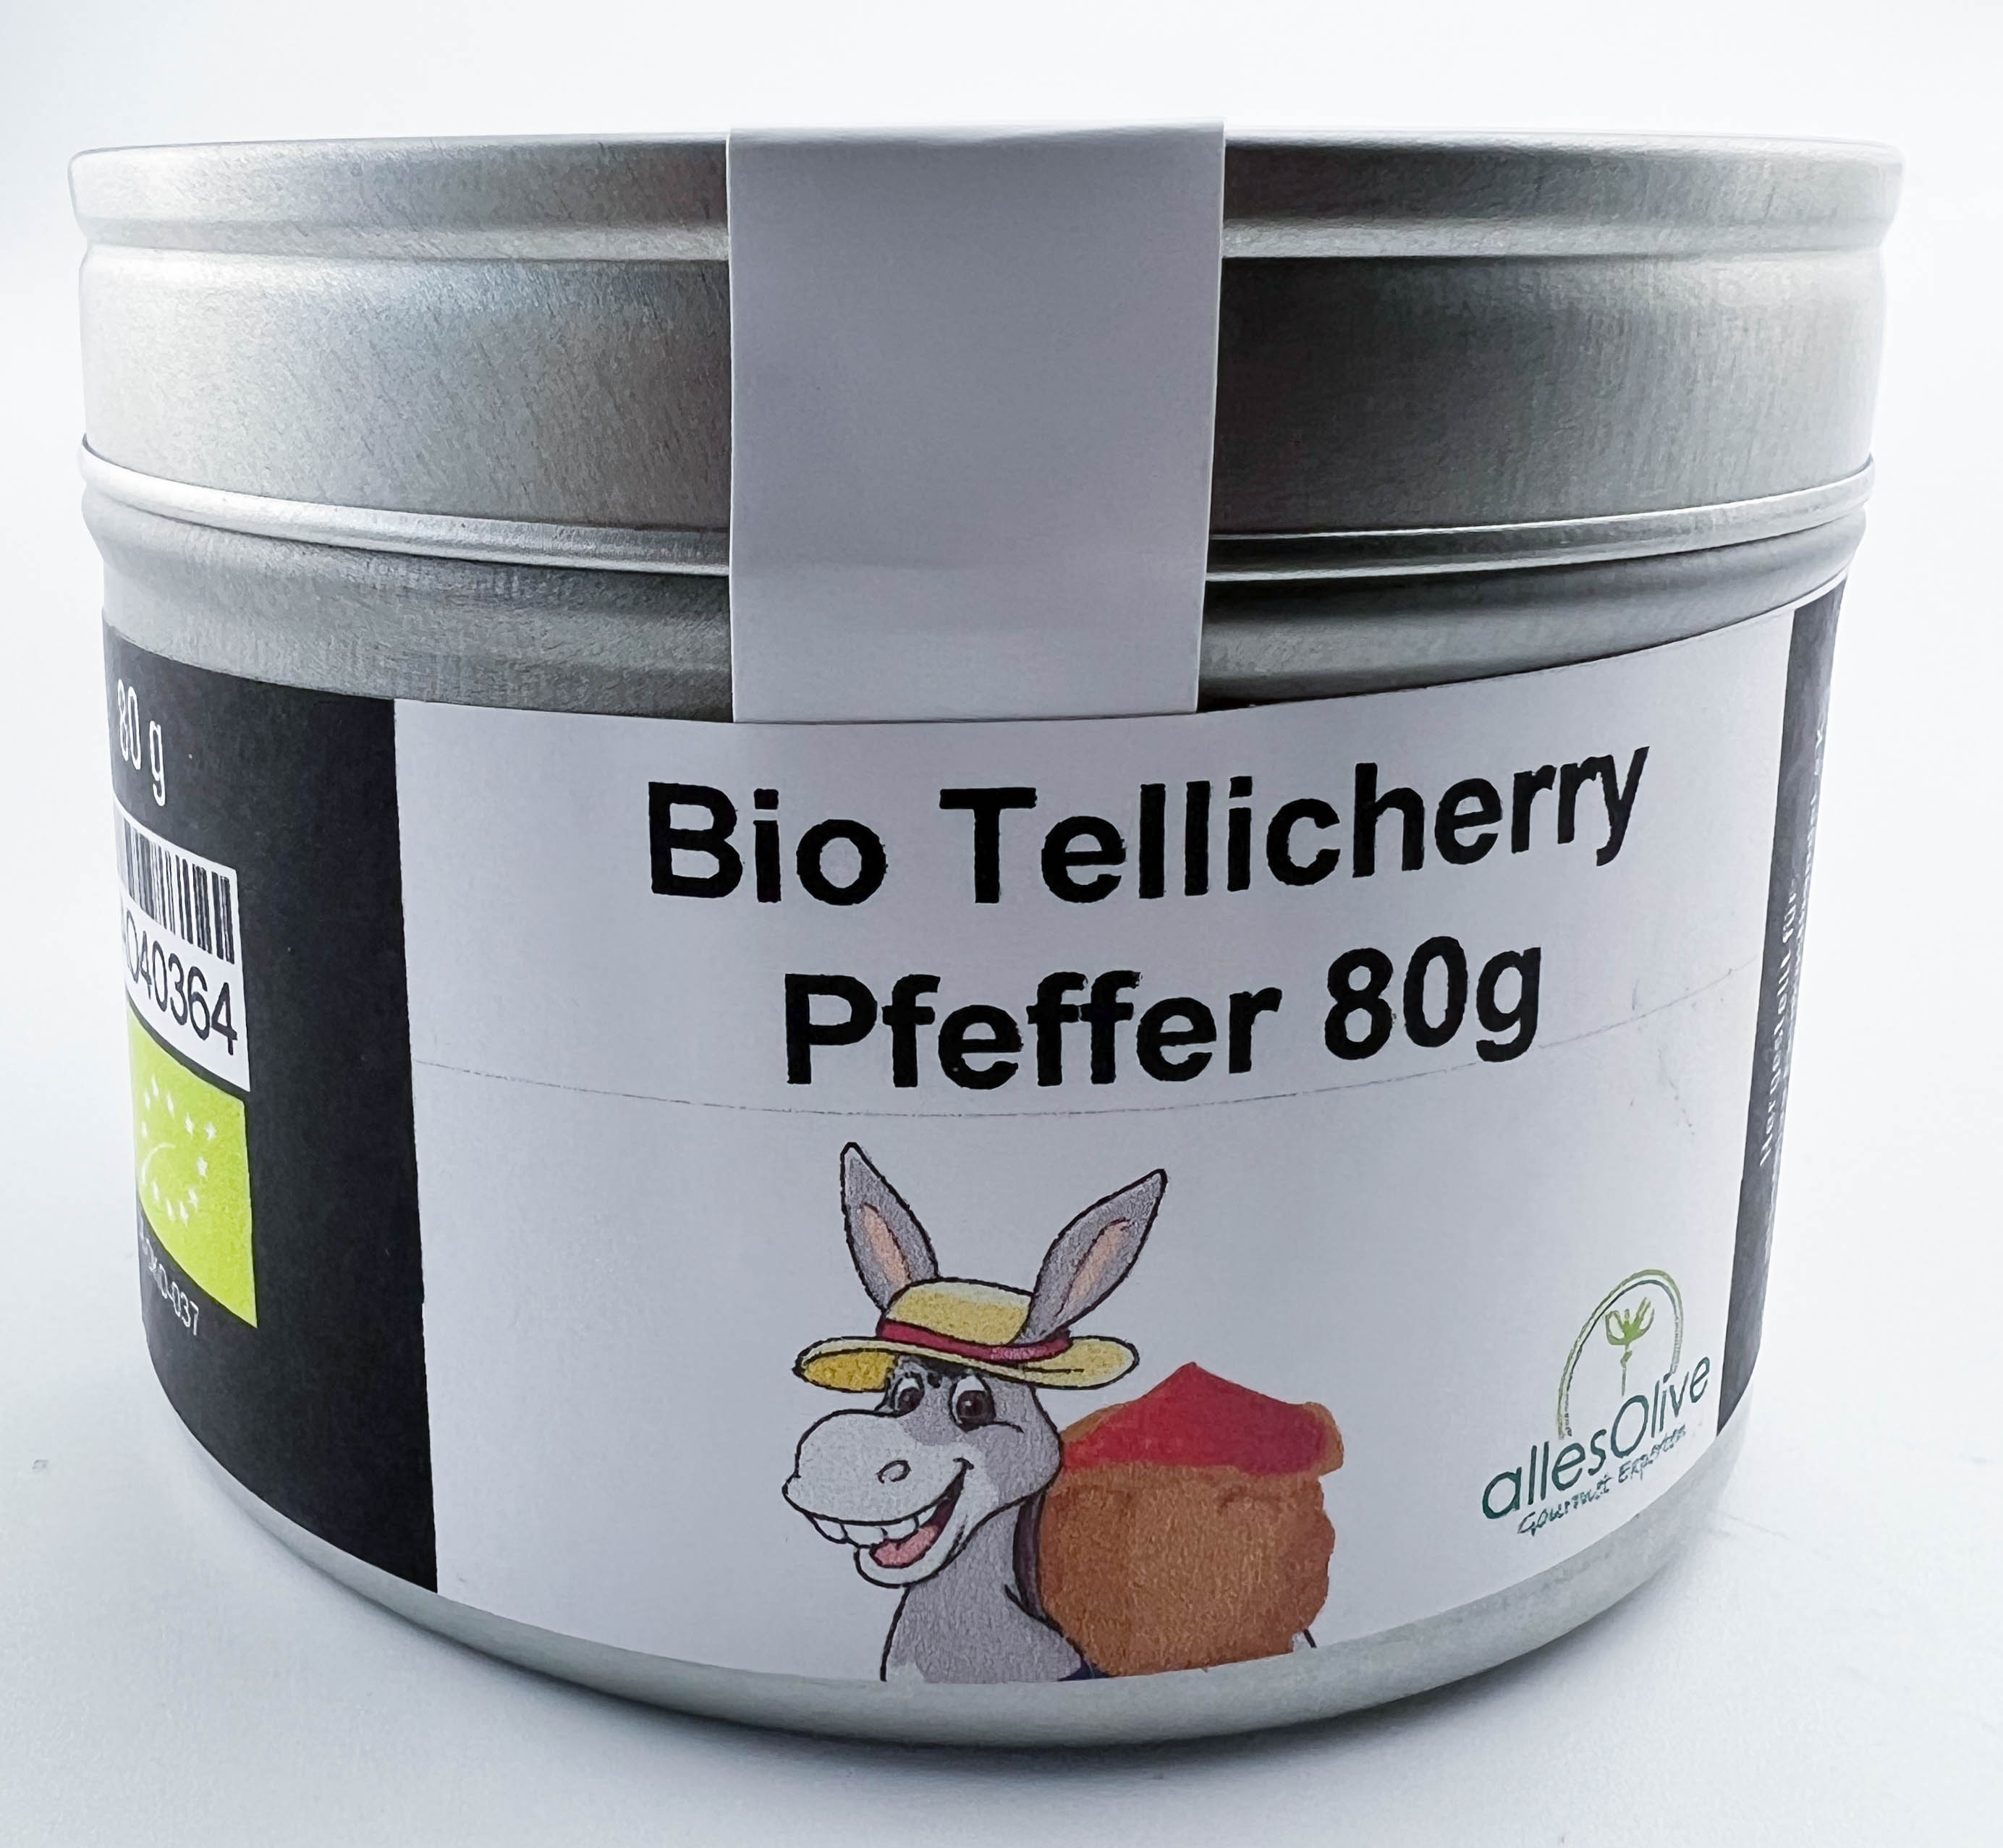 Bio Tellicherry Pfeffer 80g